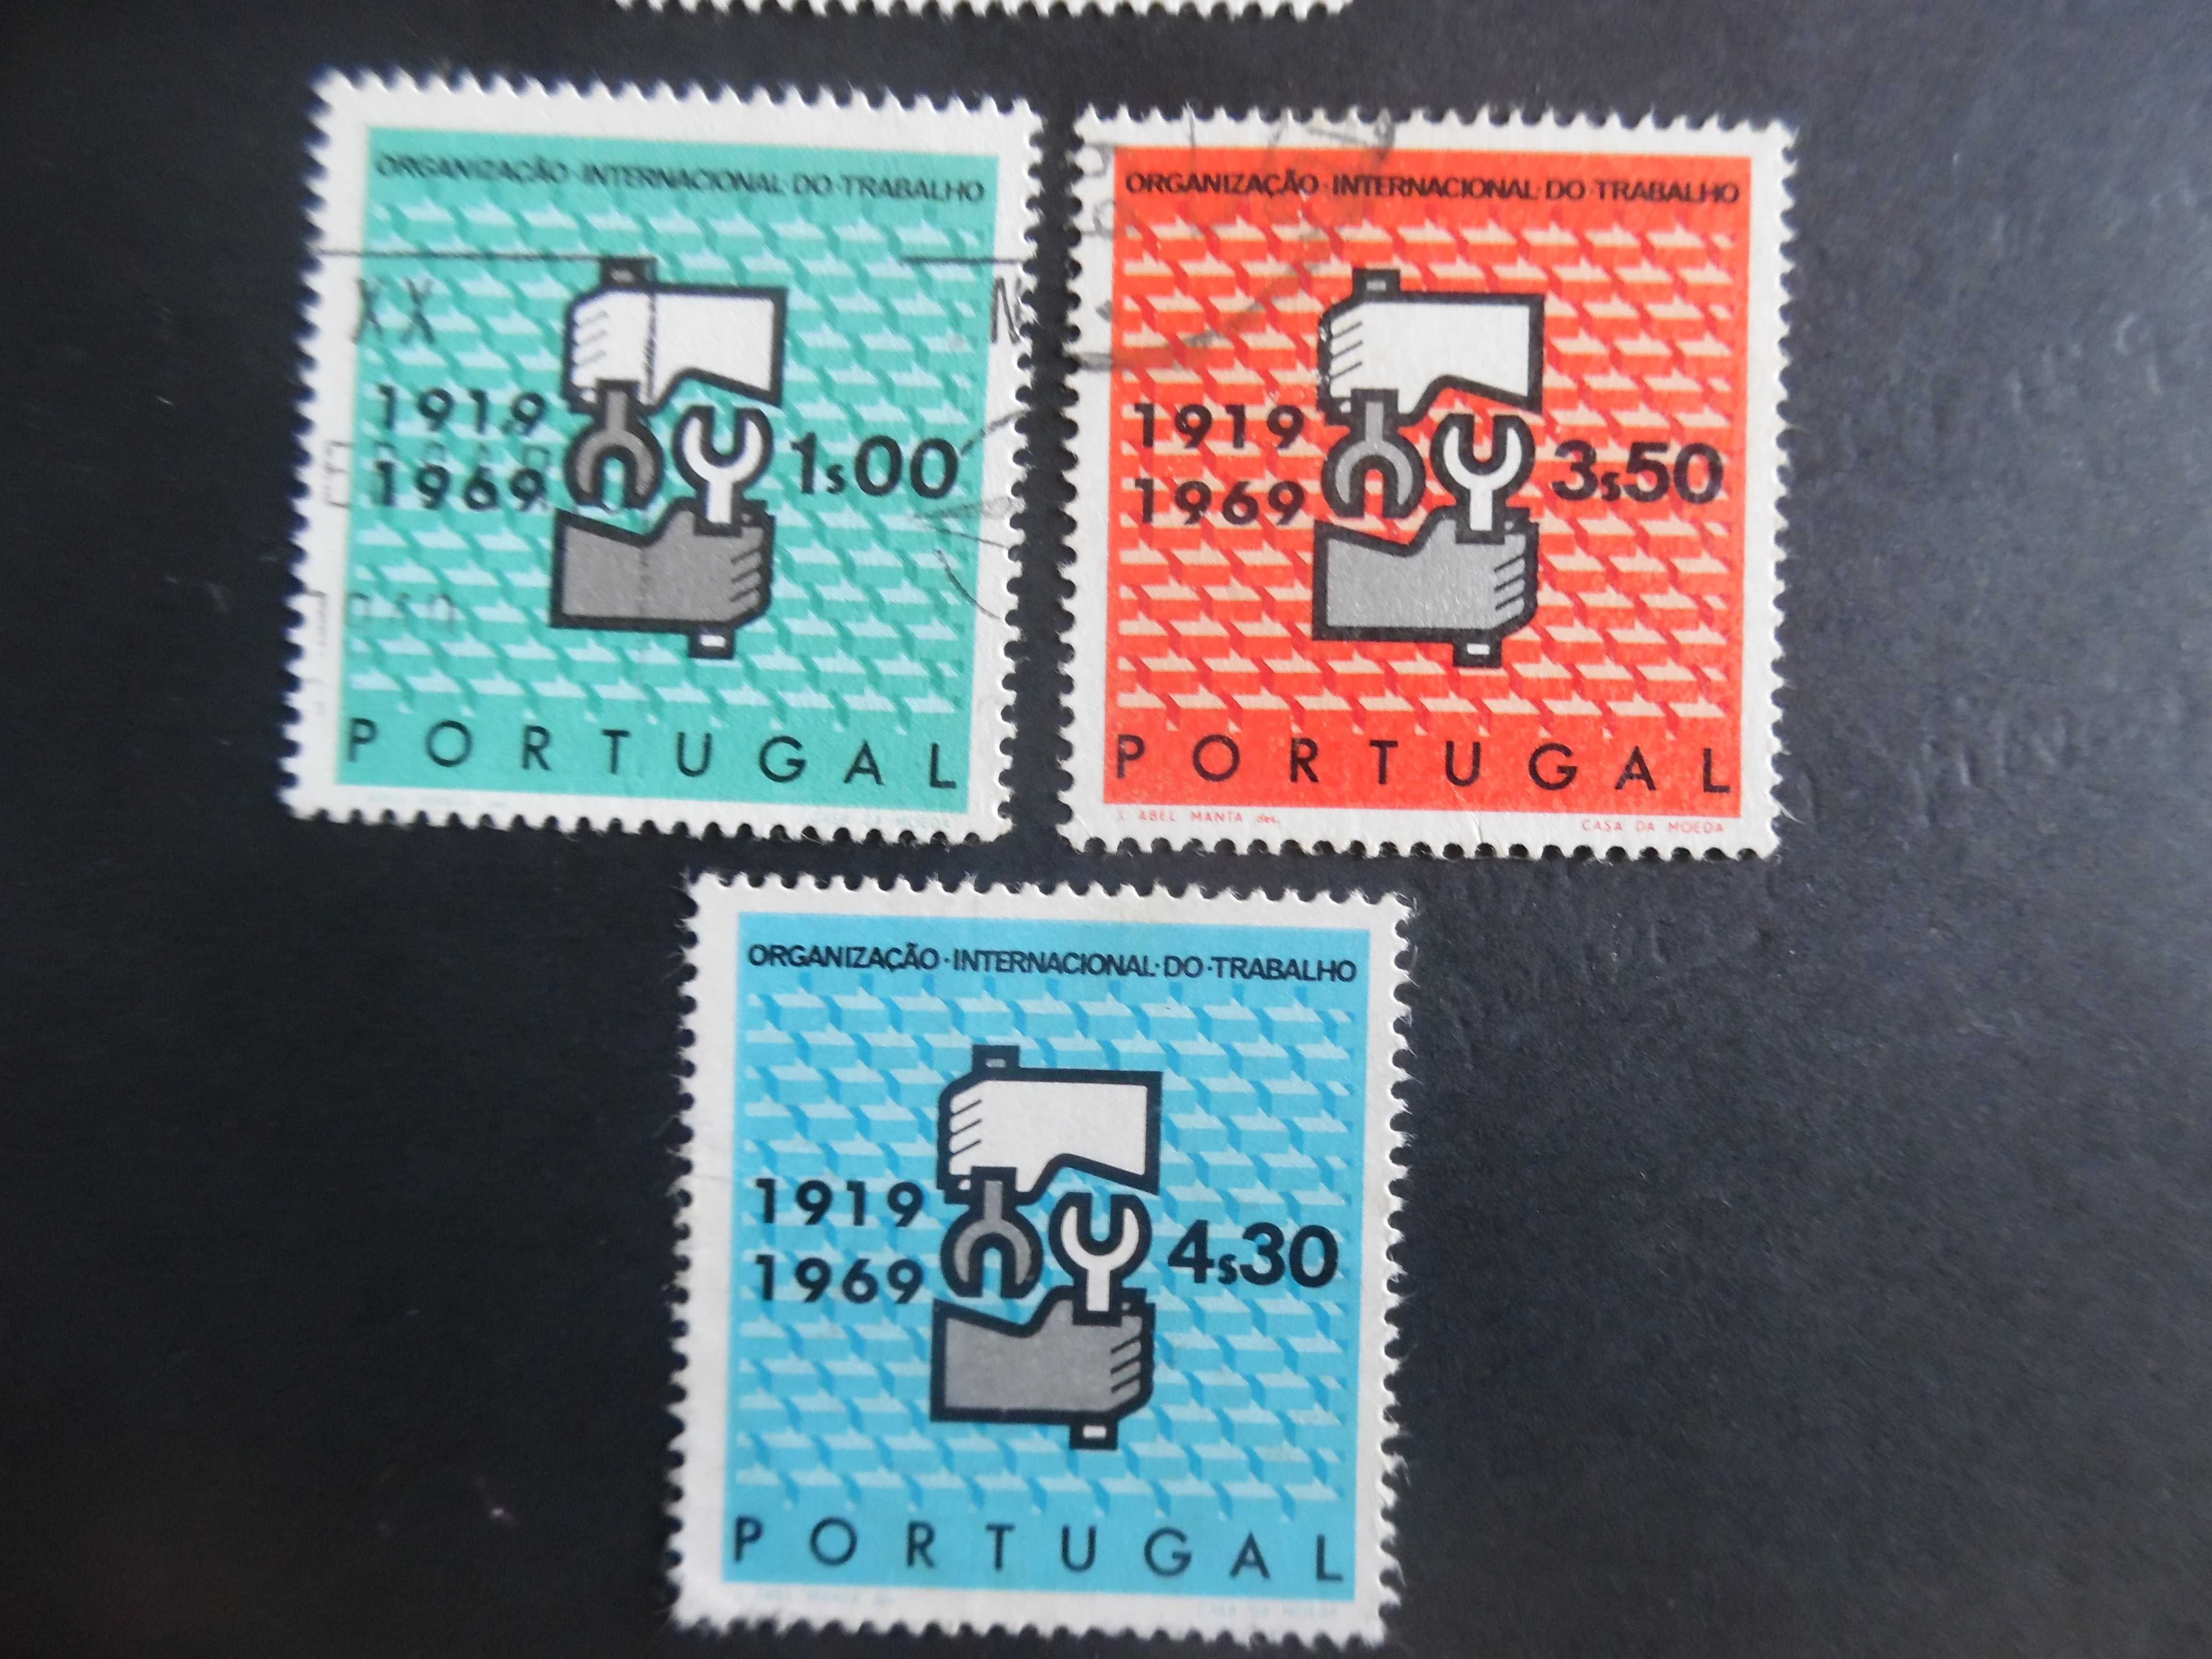 Selos Portugal 1969-Organização Trabalho completo usados/novo